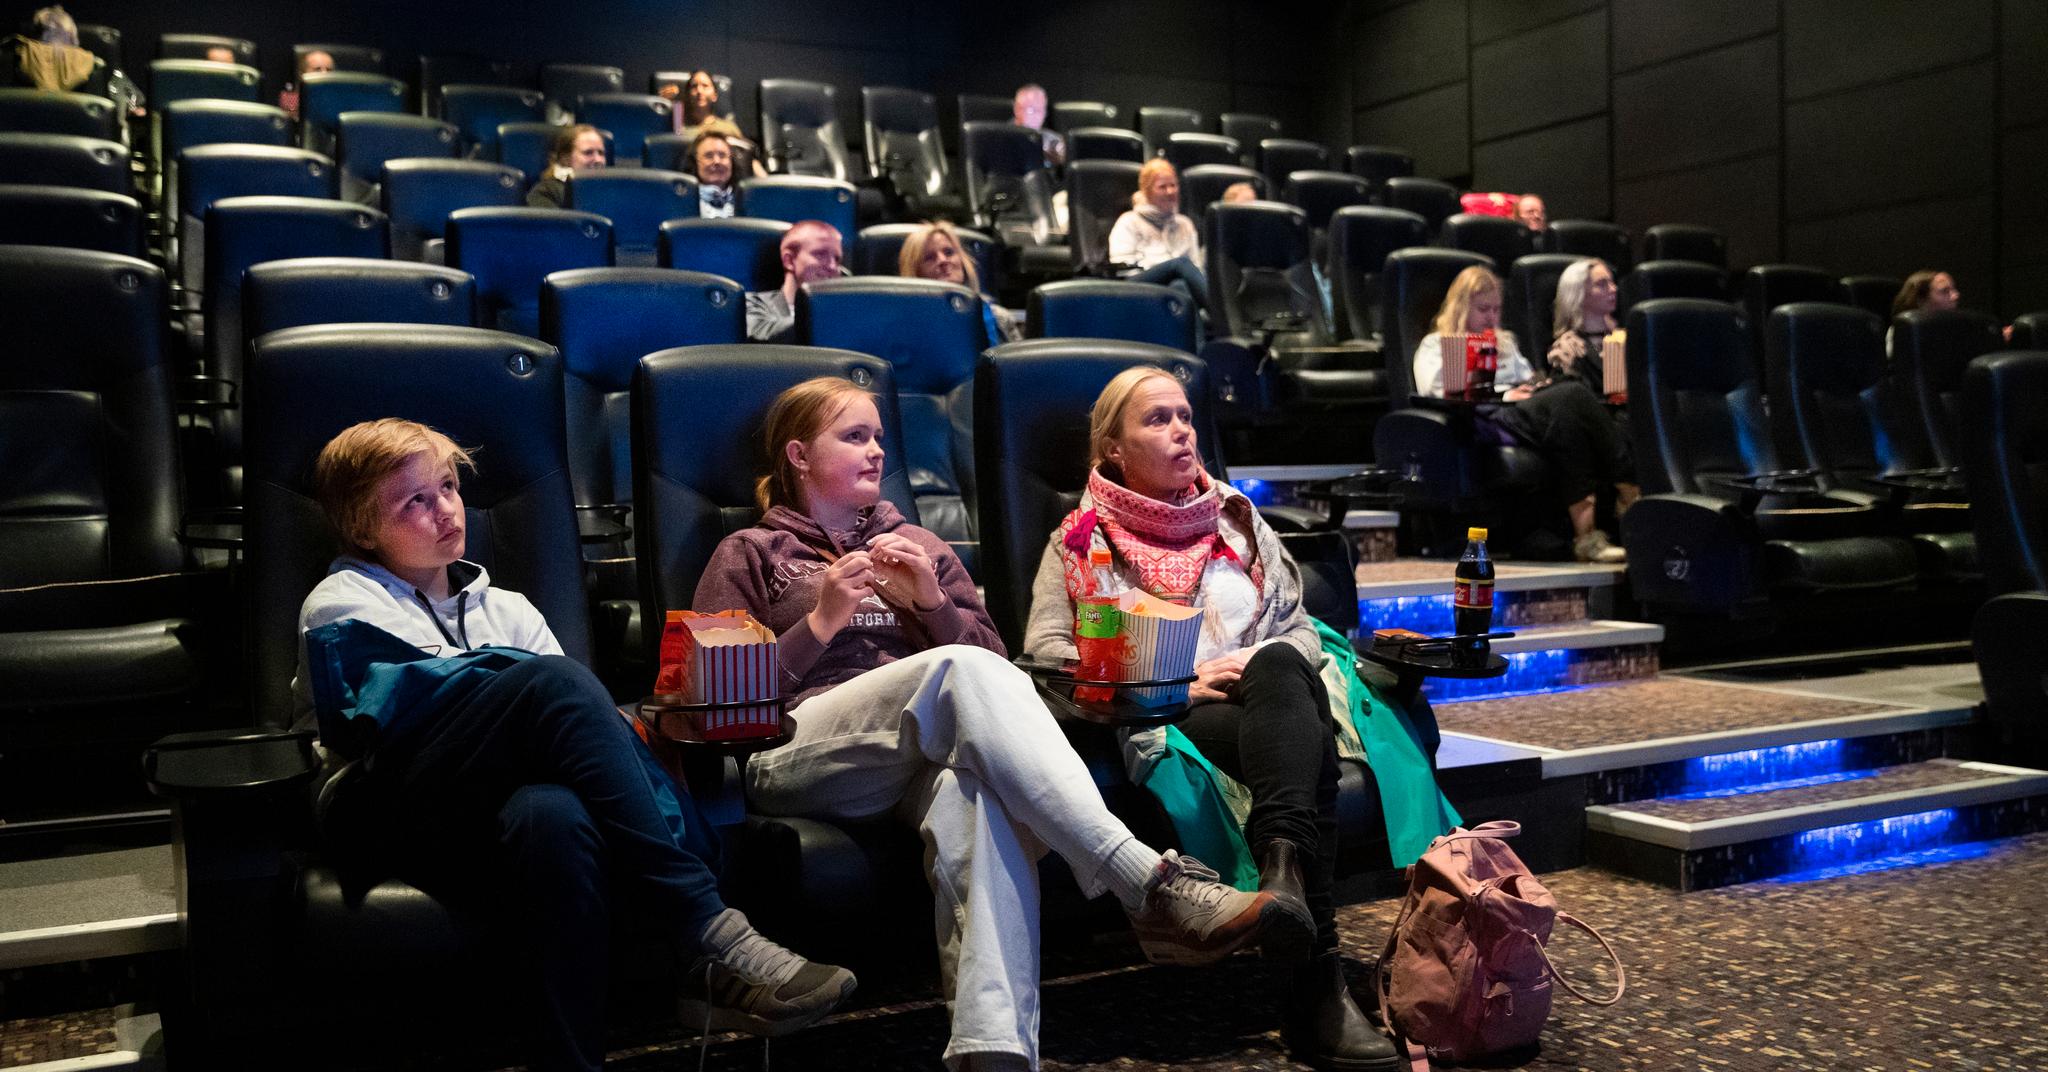 Karsten Skeie Weider, Sara Skeie Weider og Tine Skeie Mathiesen fikk sitte sammen på første rad under filmen «Emma» tirsdag kveld. Men det må være god avstand til de andre i publikum. 